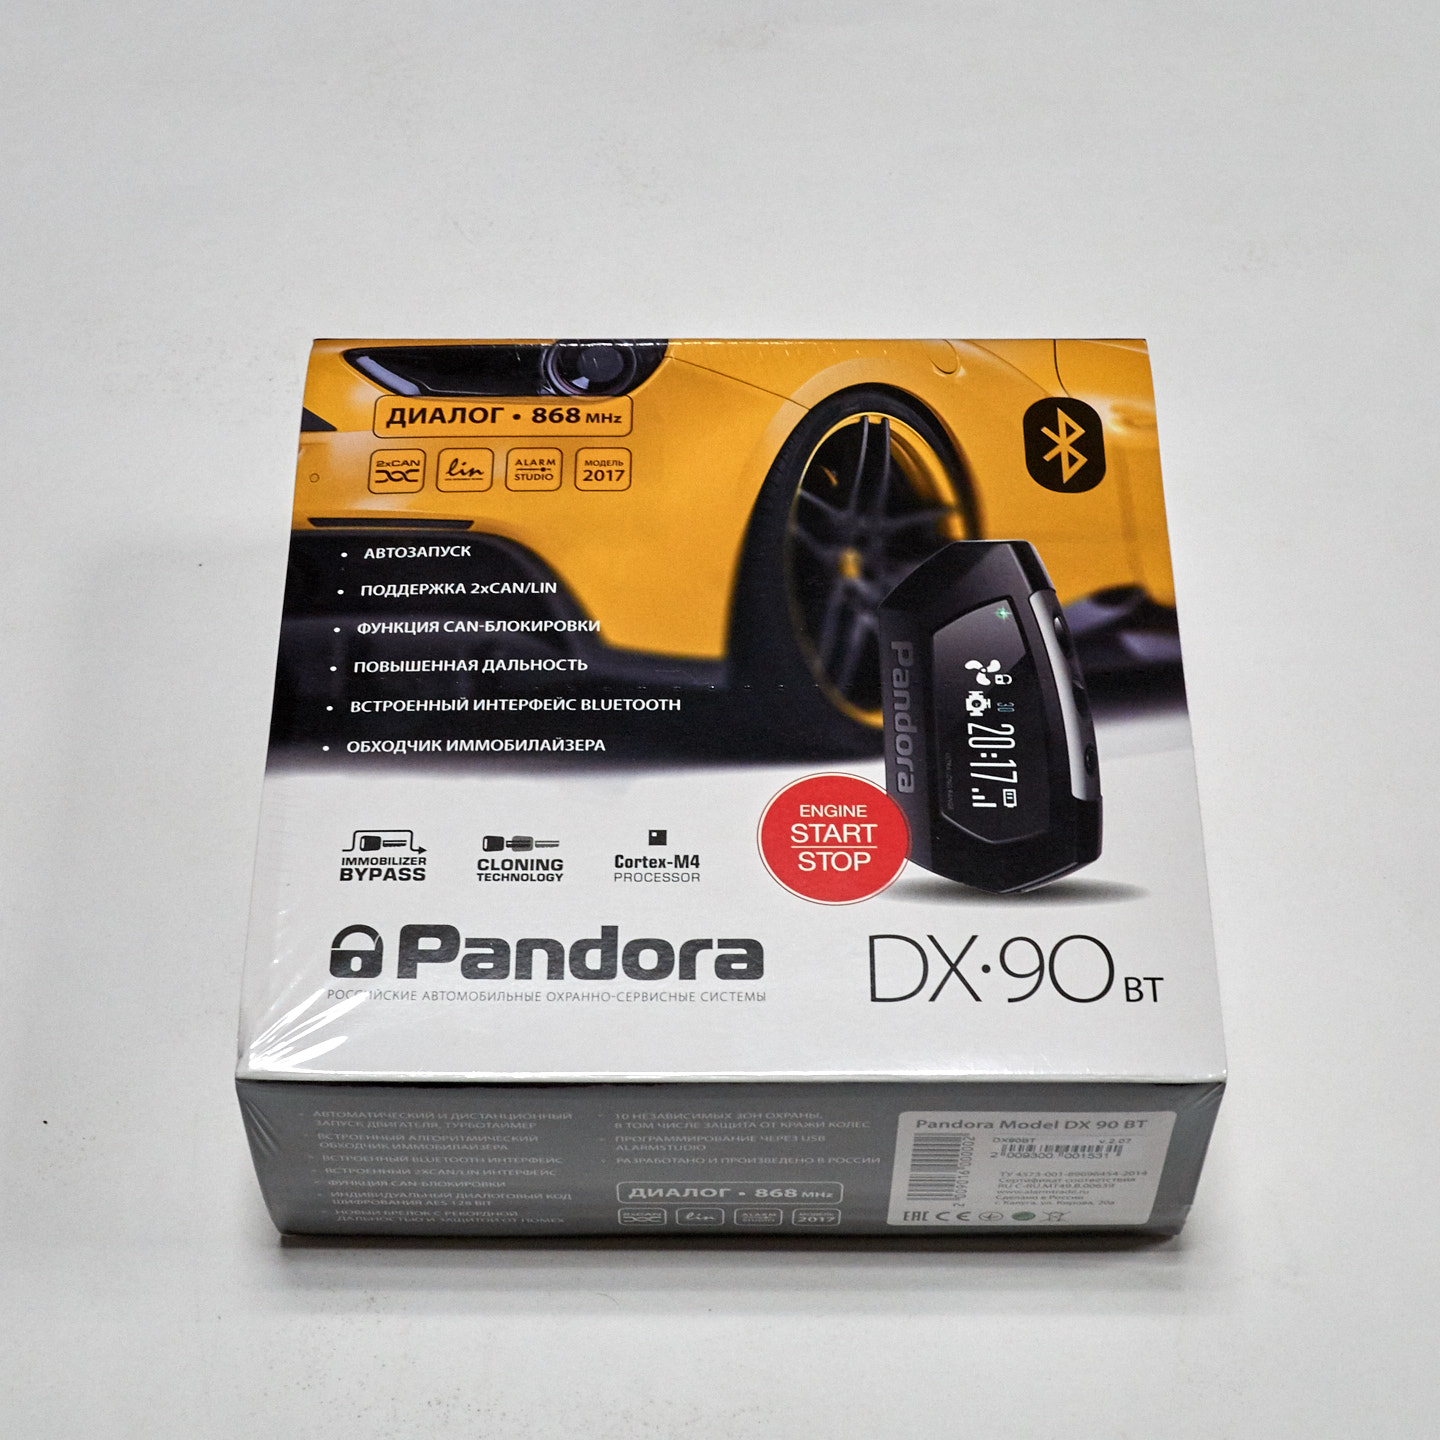 Pandora DX 90BT